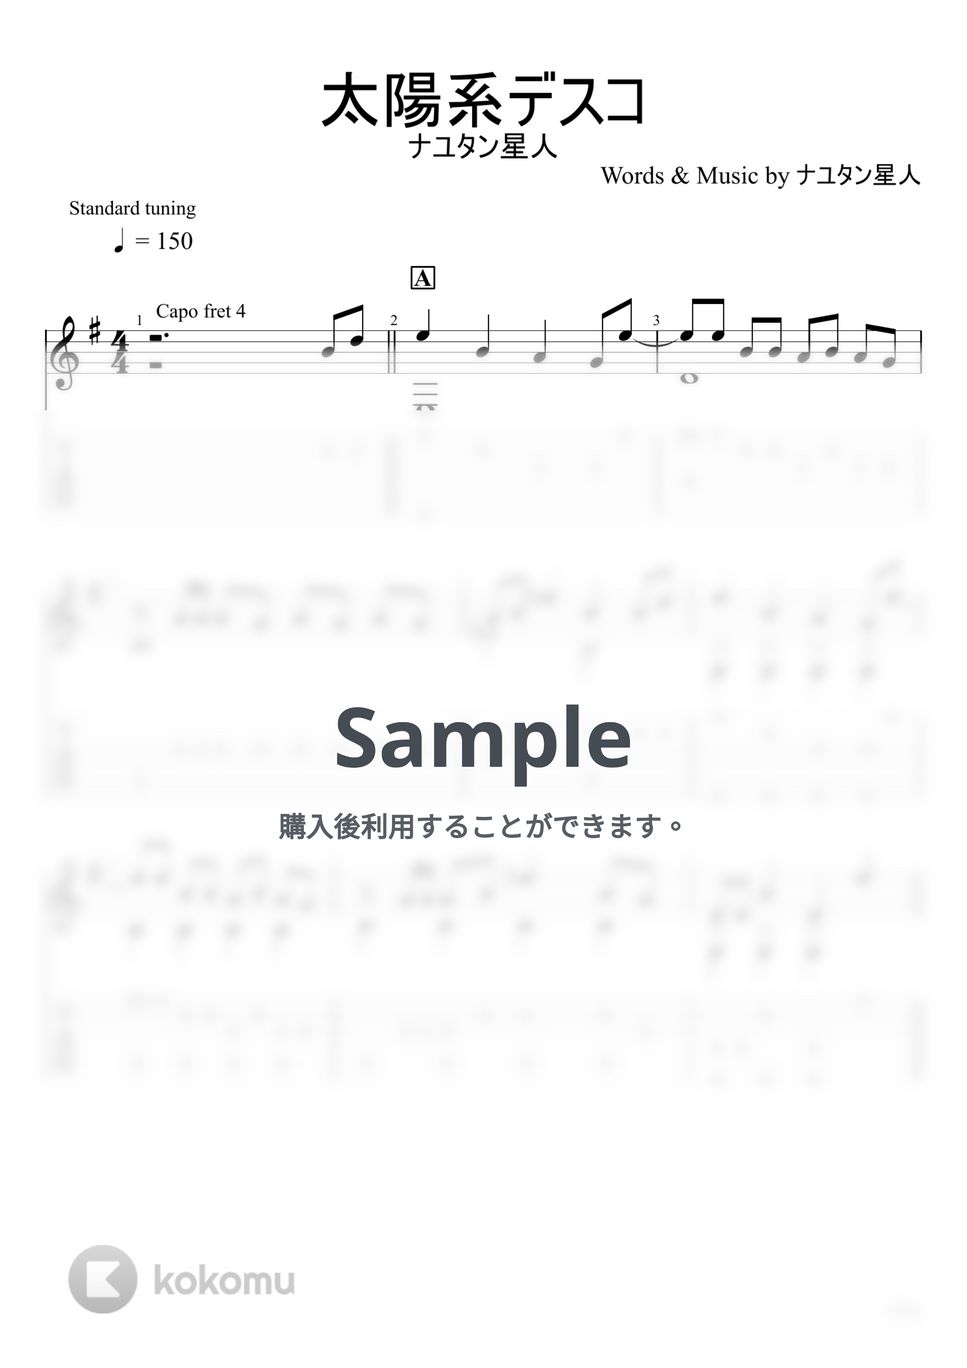 ナユタン星人 - 太陽系デスコ (ソロギター) by u3danchou